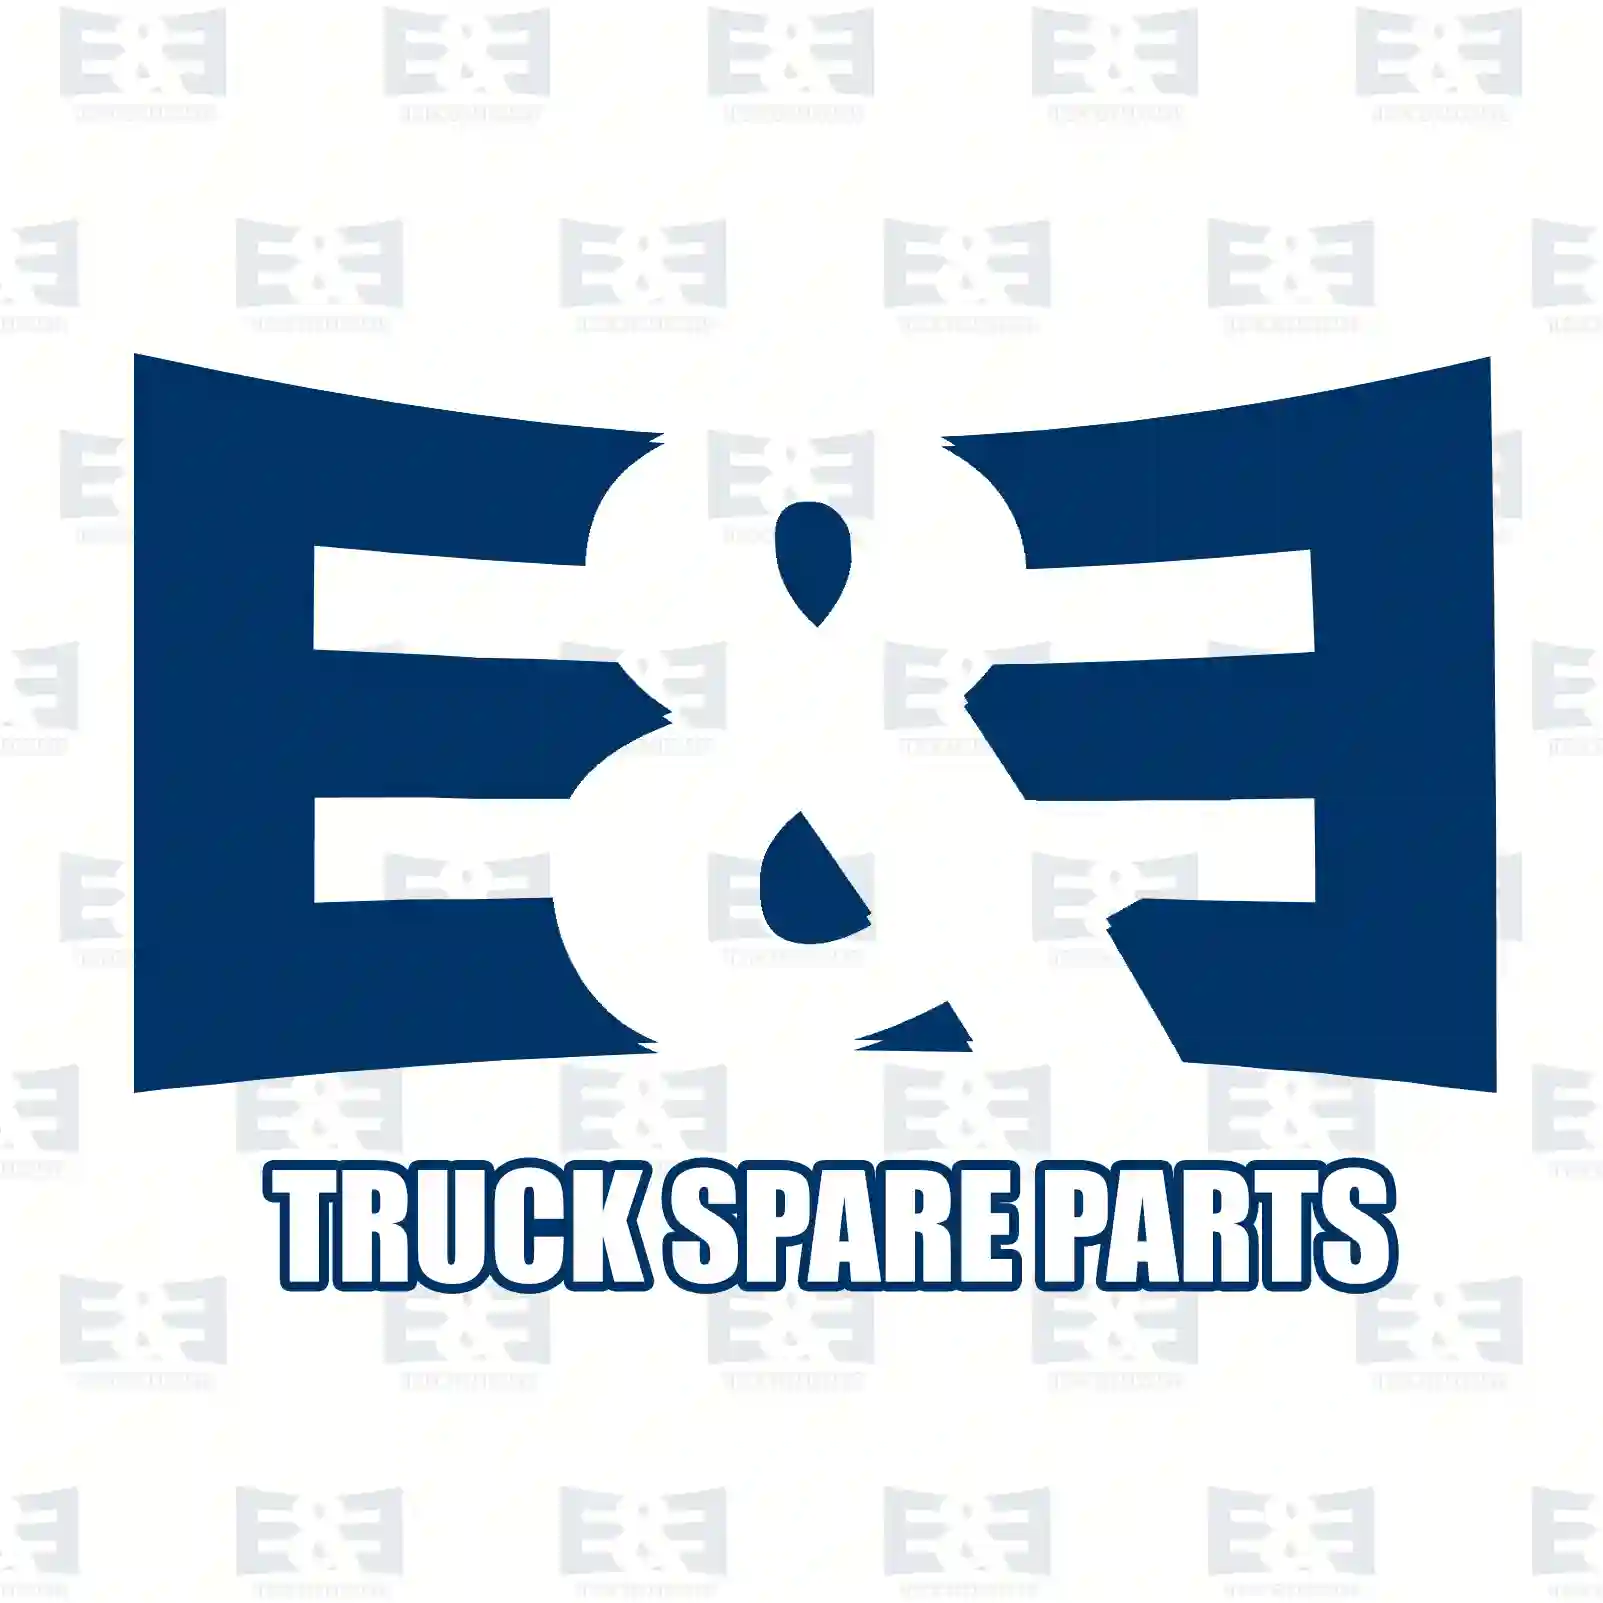 Wiper arm, with wiper nozzle, 2E2292125, 9418200344, 9418200544, 9418200744, 9418200944, ZG21289-0008 ||  2E2292125 E&E Truck Spare Parts | Truck Spare Parts, Auotomotive Spare Parts Wiper arm, with wiper nozzle, 2E2292125, 9418200344, 9418200544, 9418200744, 9418200944, ZG21289-0008 ||  2E2292125 E&E Truck Spare Parts | Truck Spare Parts, Auotomotive Spare Parts